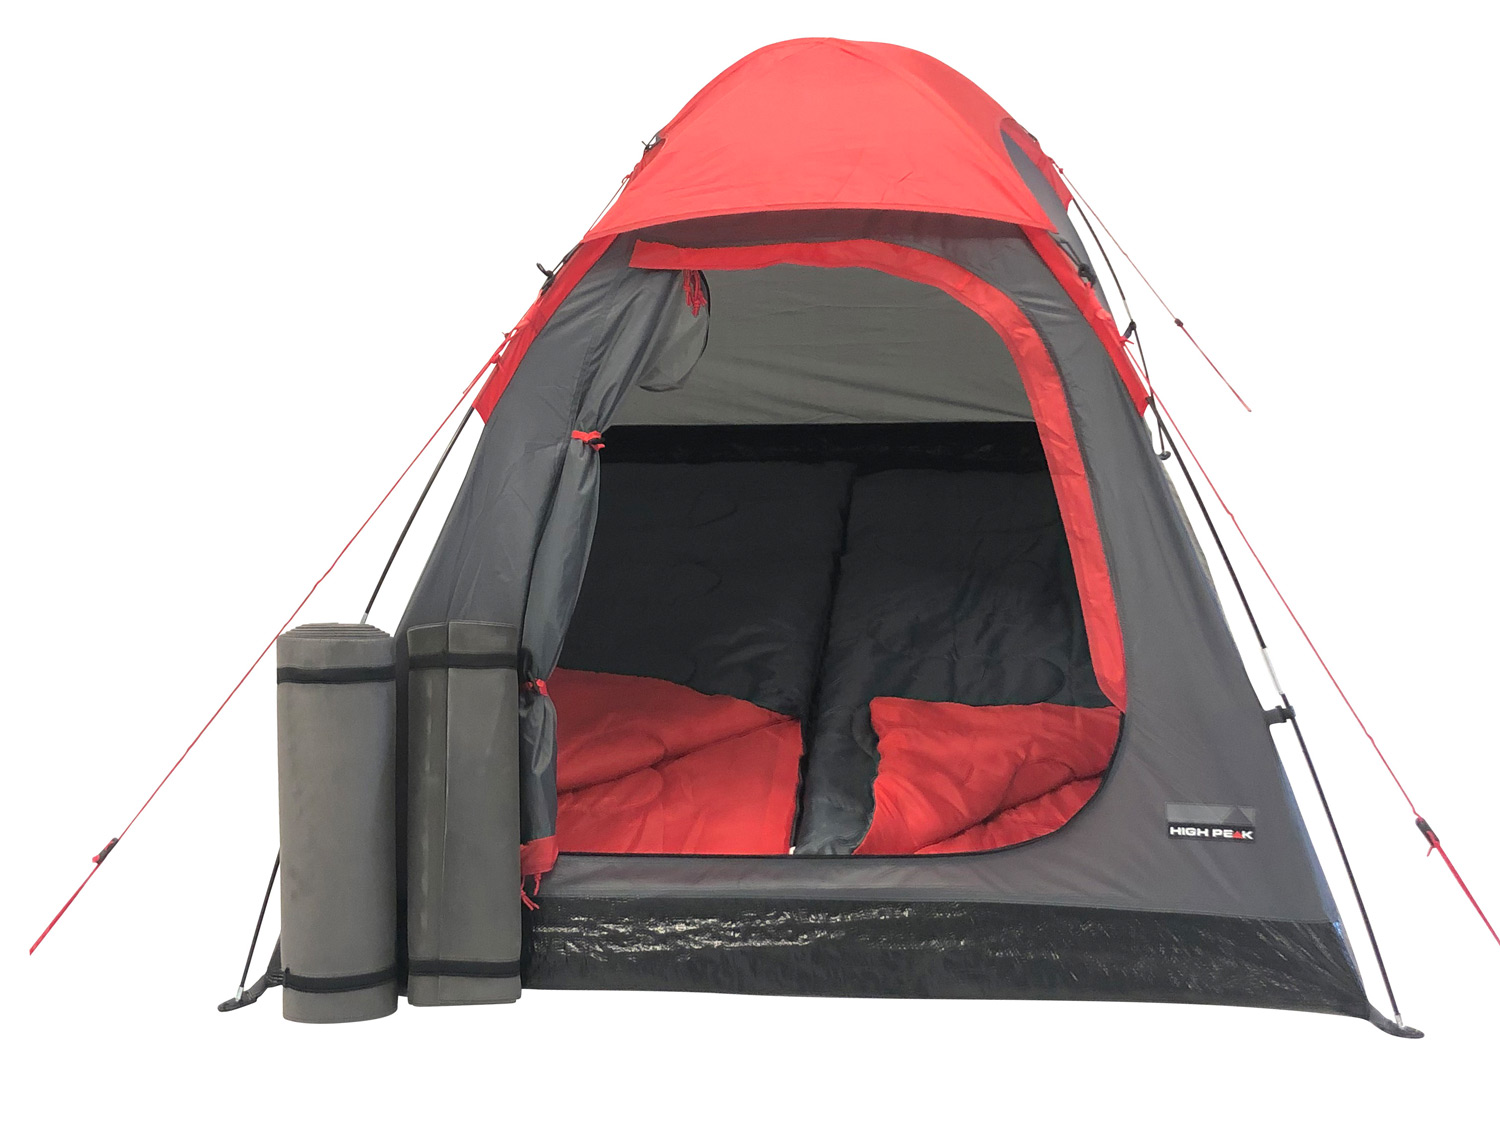 HIGH PEAK Camping-Set für 2 Personen, 5-teilig